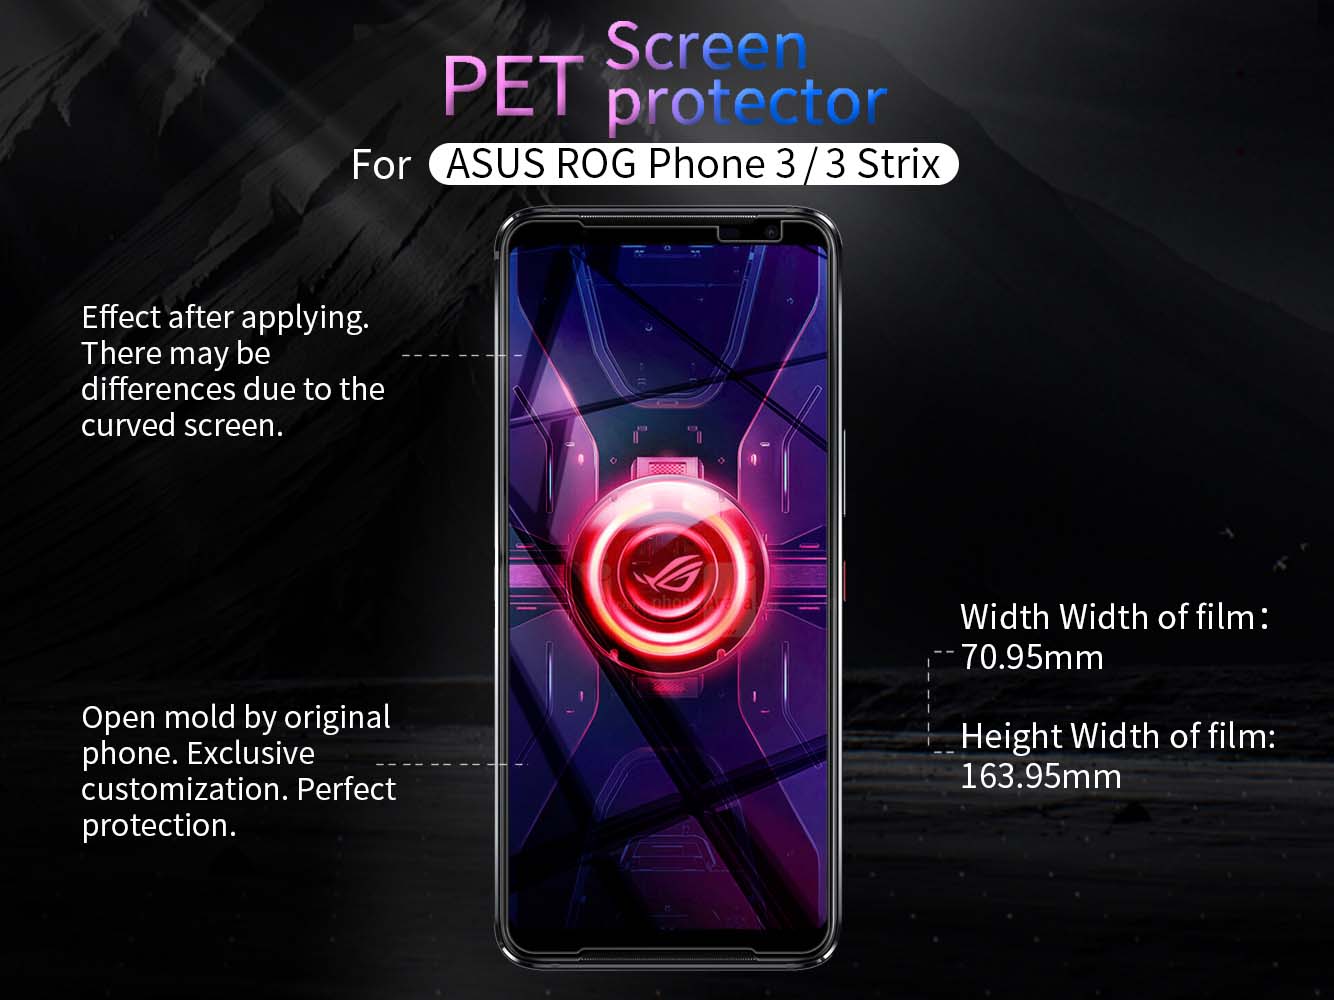 ASUS ROG Phone 3 screen protector